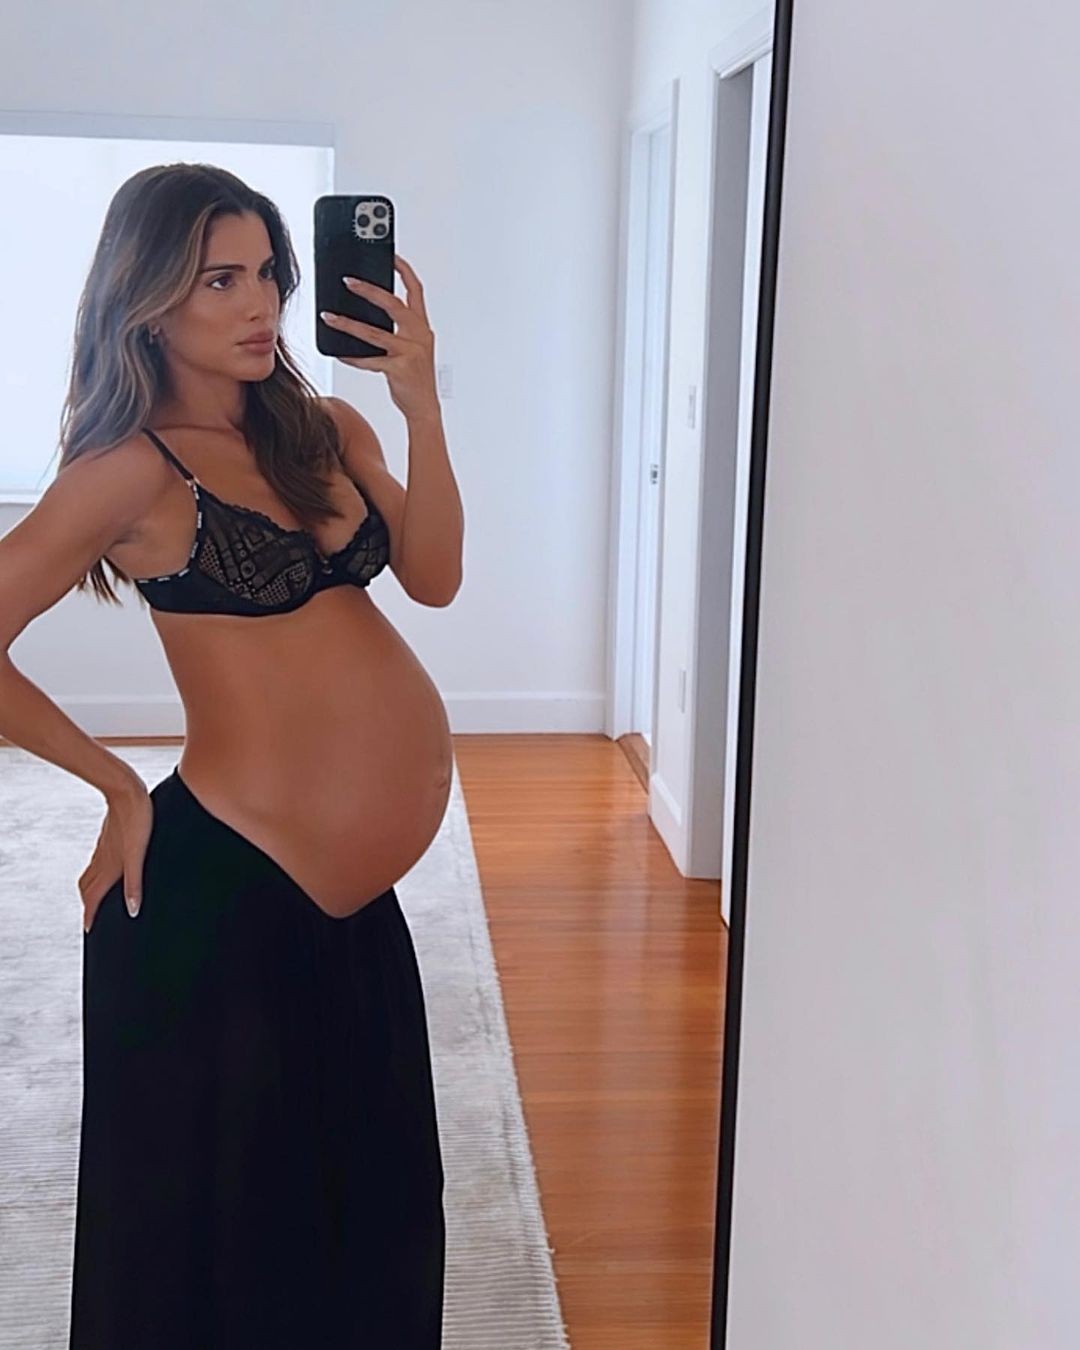 Camila Coelho - A influenciadora anunciou em abril que estava esperando um filho com o marido Icaro Brenner. O bebê chamado Kai Coelho nasceu no dia 7 de agosto. 